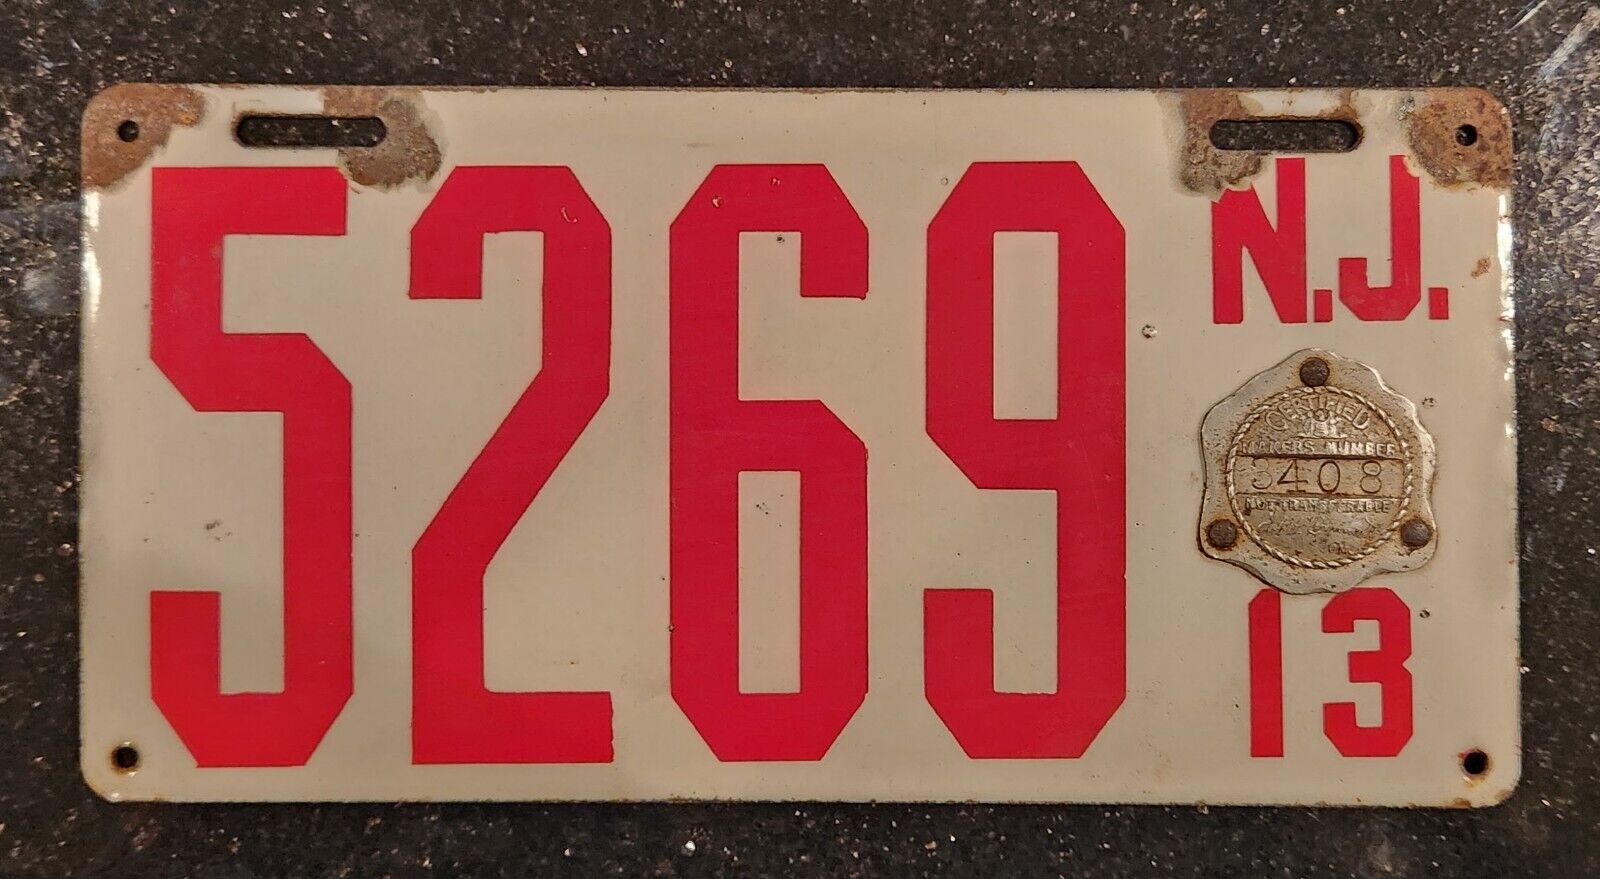 1913 New Jersey NJ Porcelain License Plate Car Tag Vehicle Vintage Registration